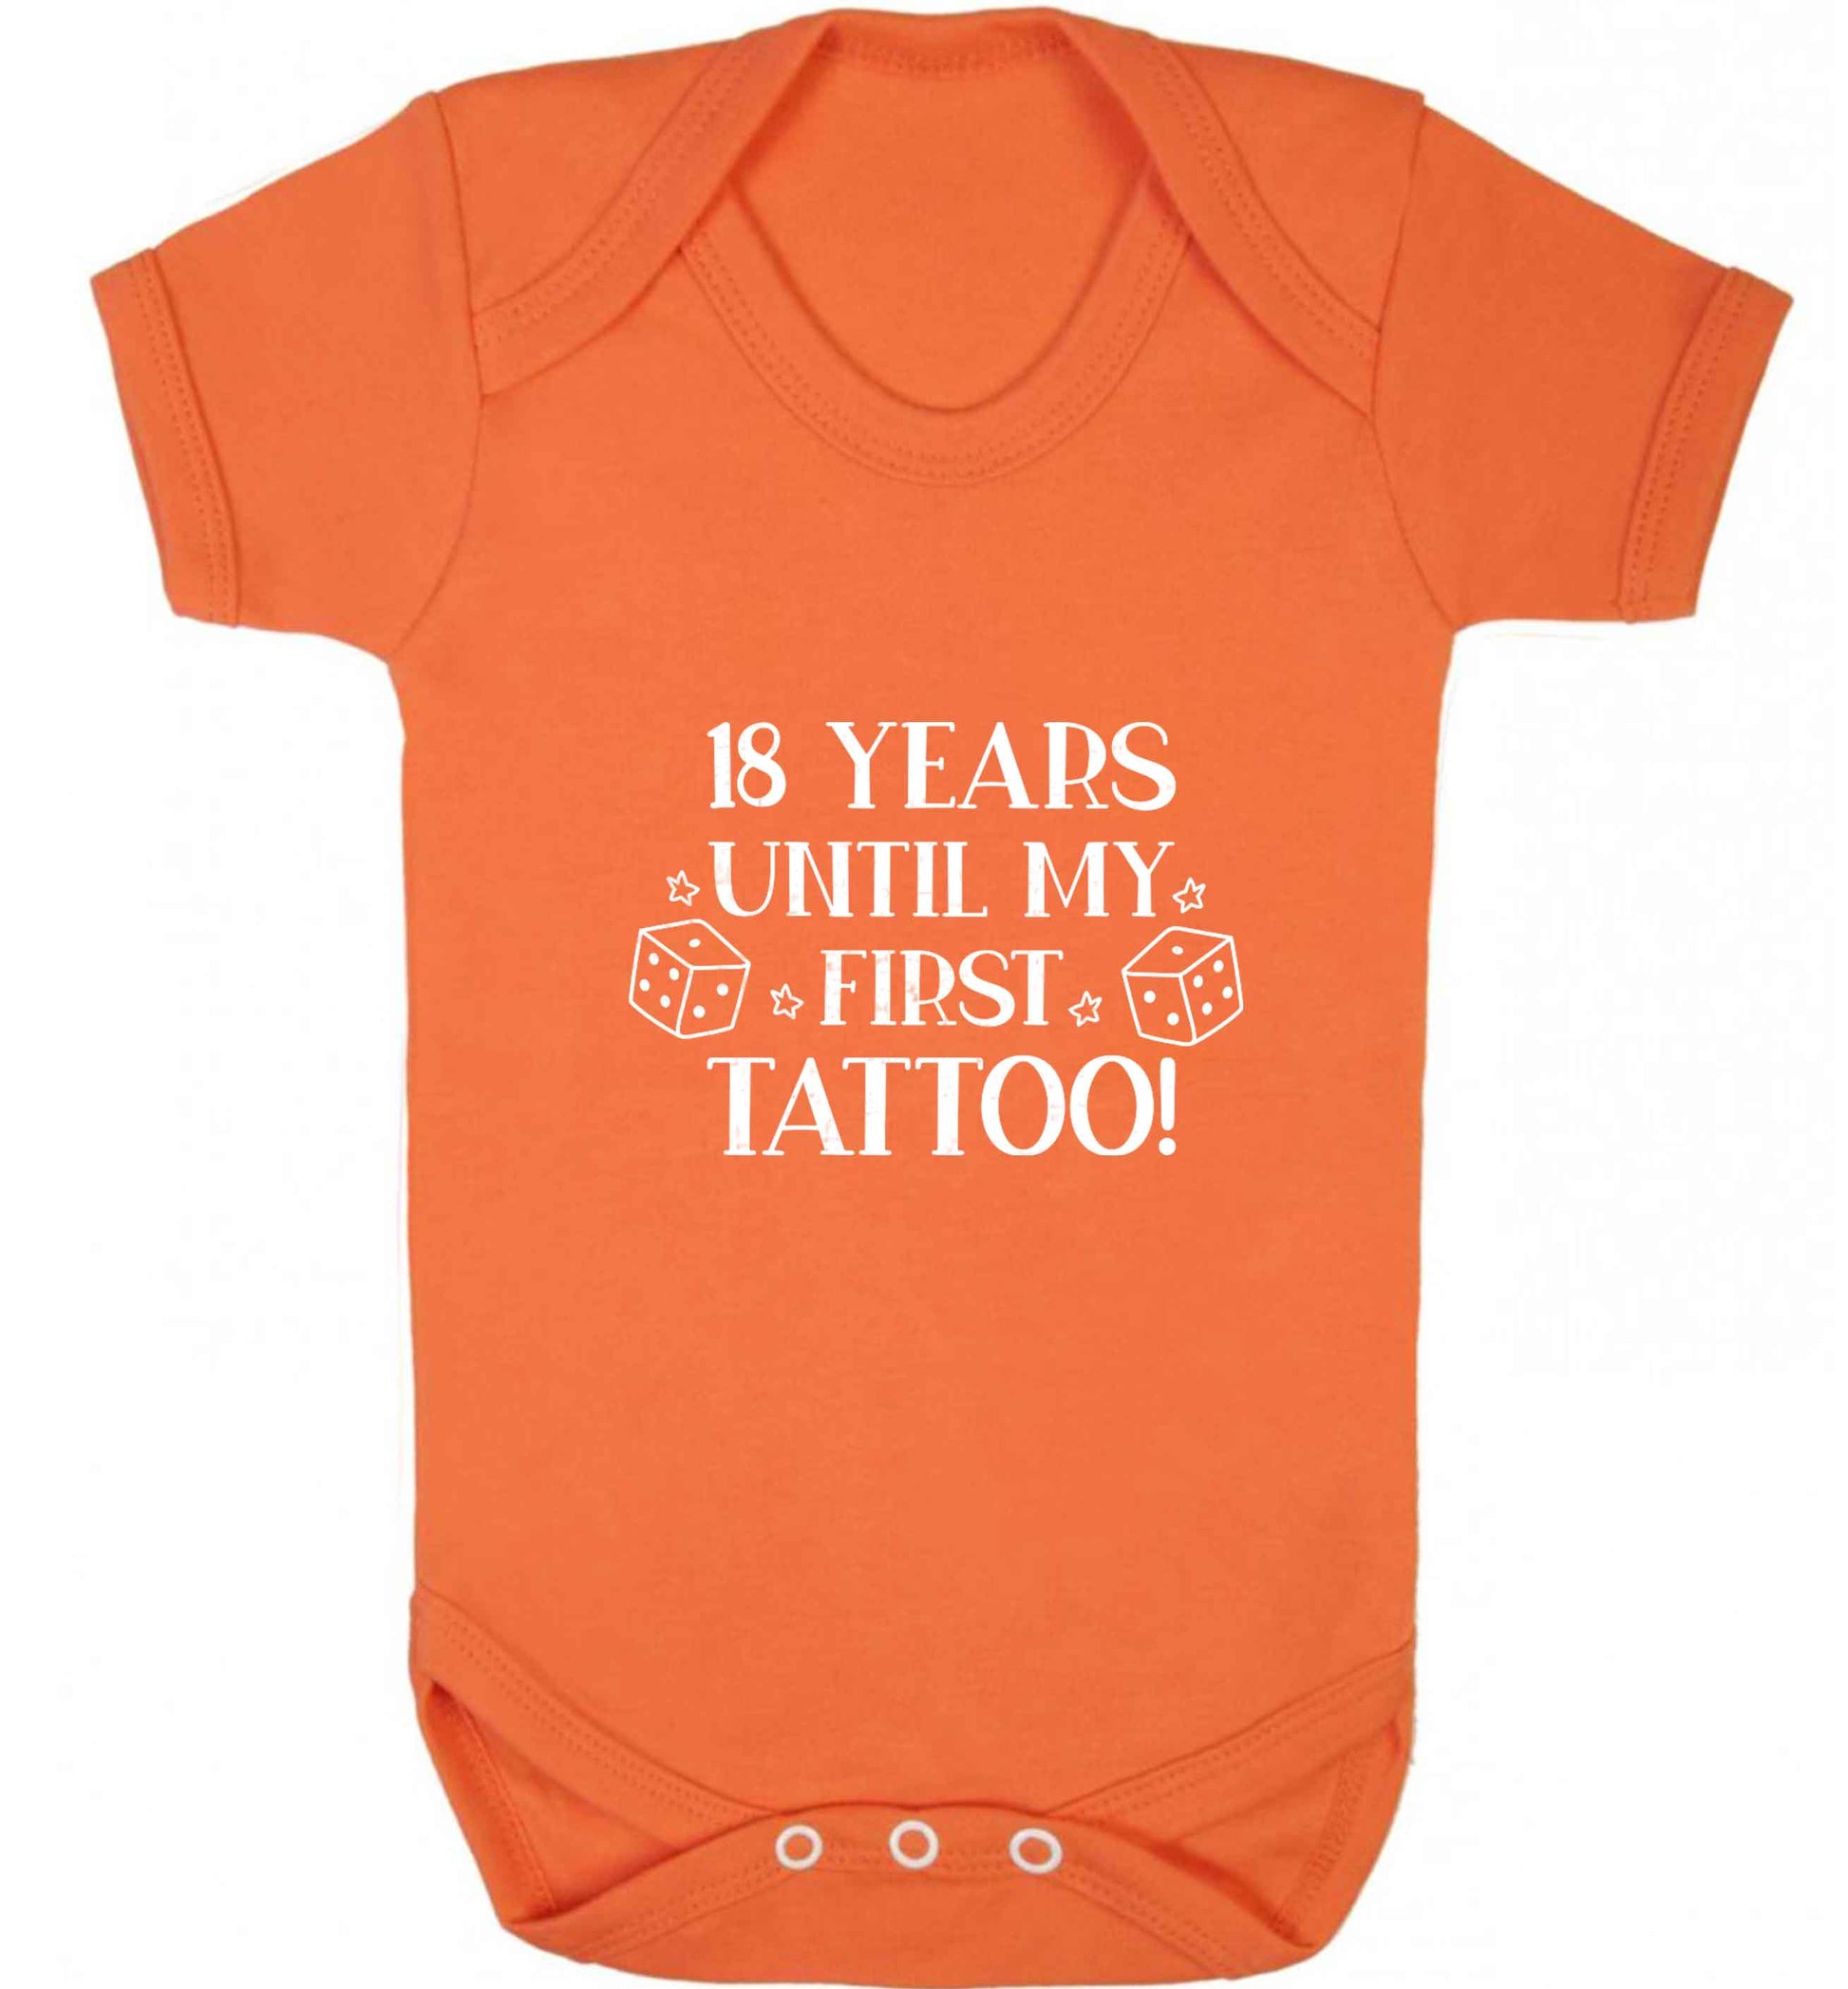 18 Years Until my First Tattoo baby vest orange 18-24 months